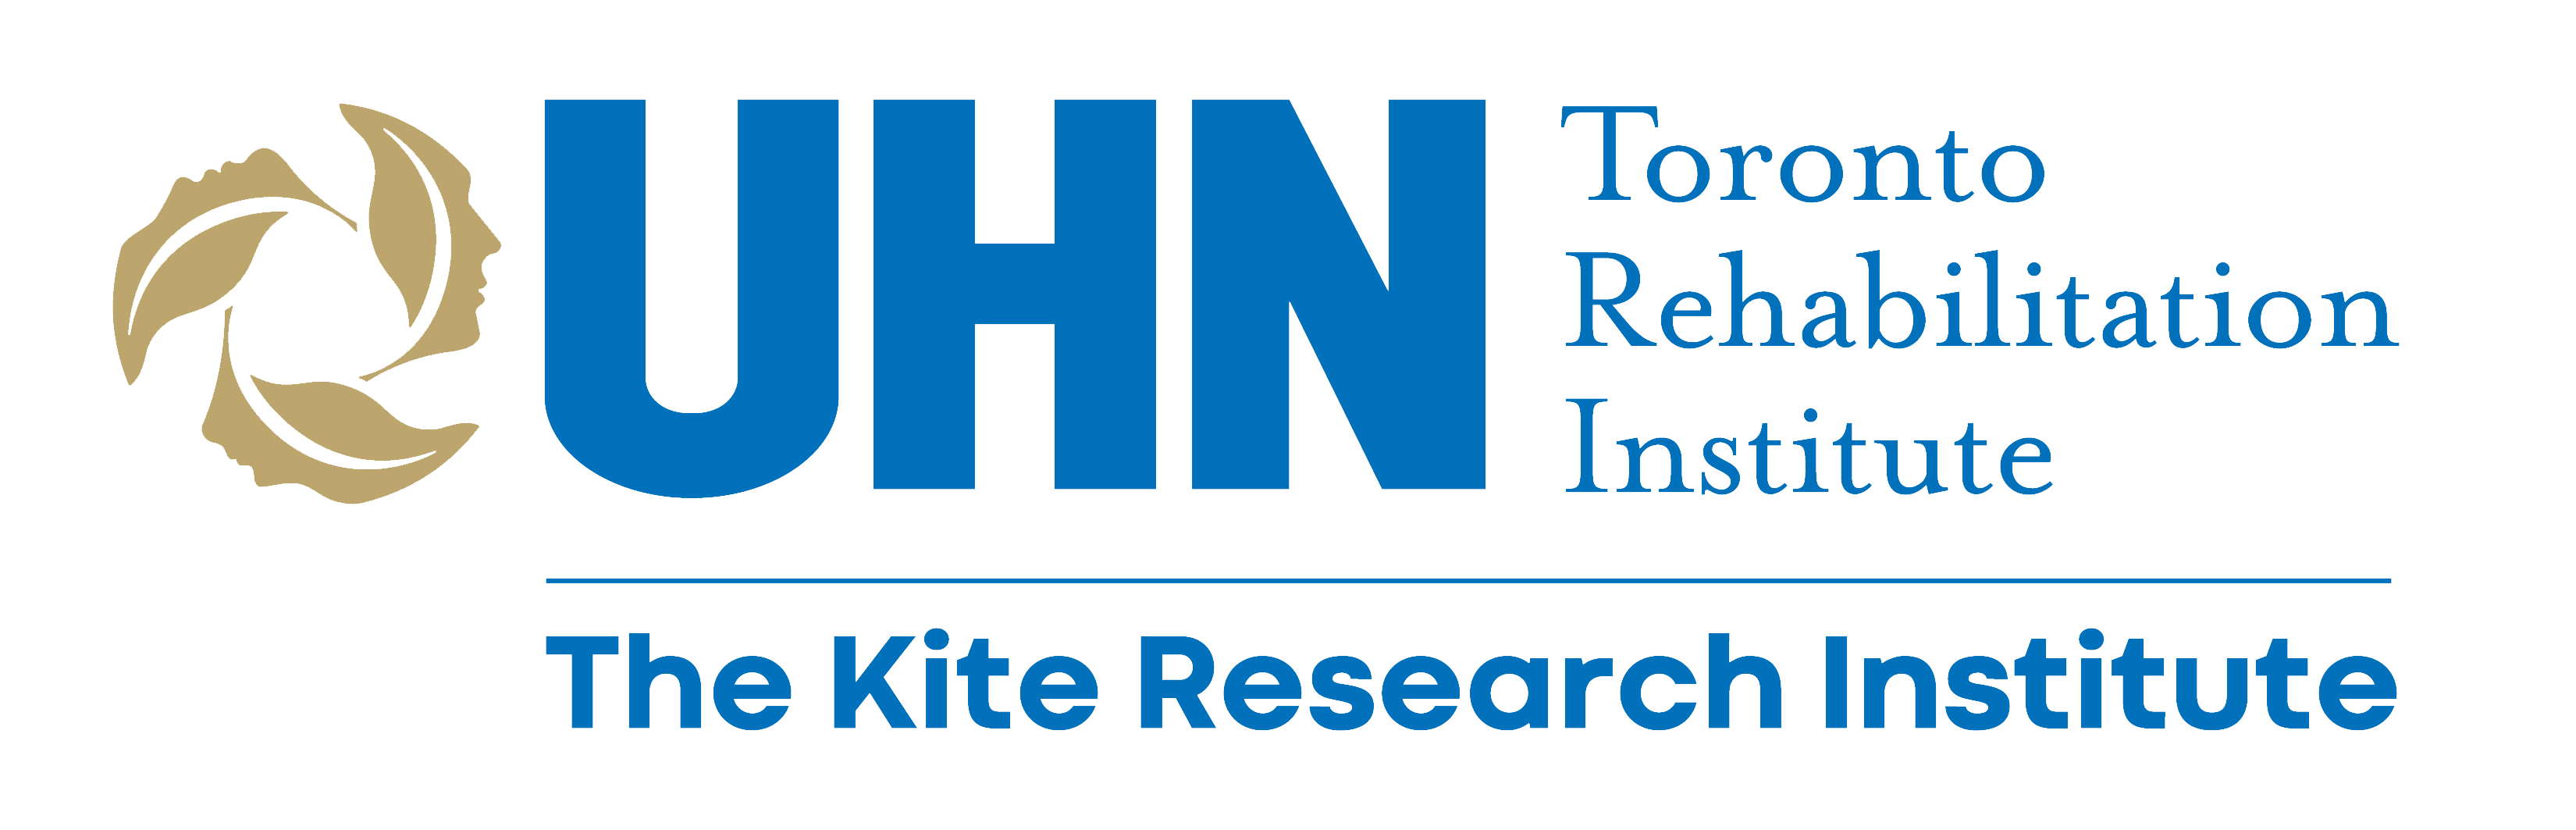 UHN Toronto Rehabilitation Institute - The Kite Research Institute